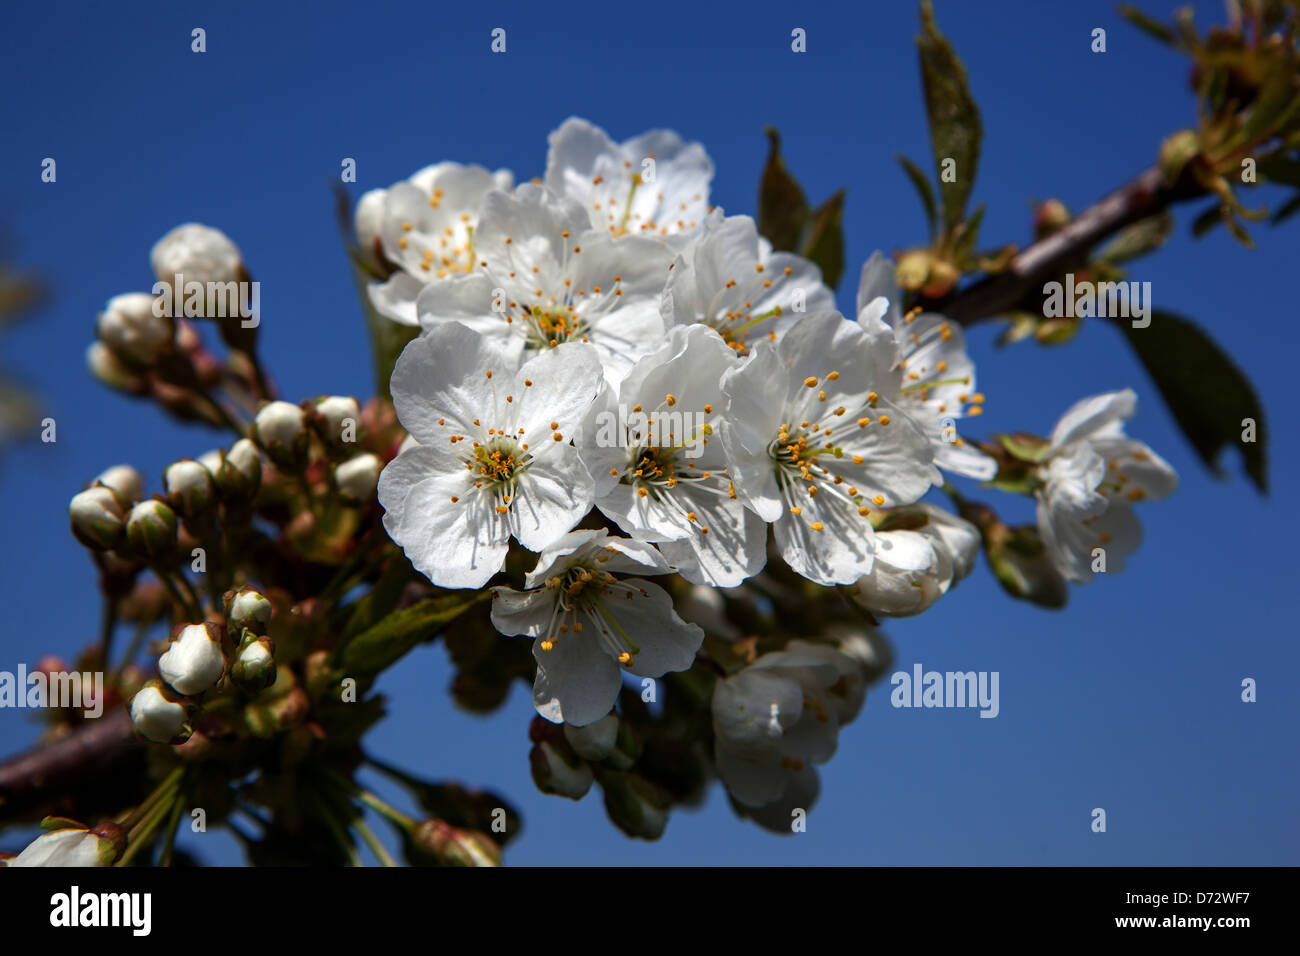 Nahaufnahme von Blüten auf einem Zweig im frühen Frühjahr Blühende Blumen auf blühendem Baum Stockfoto